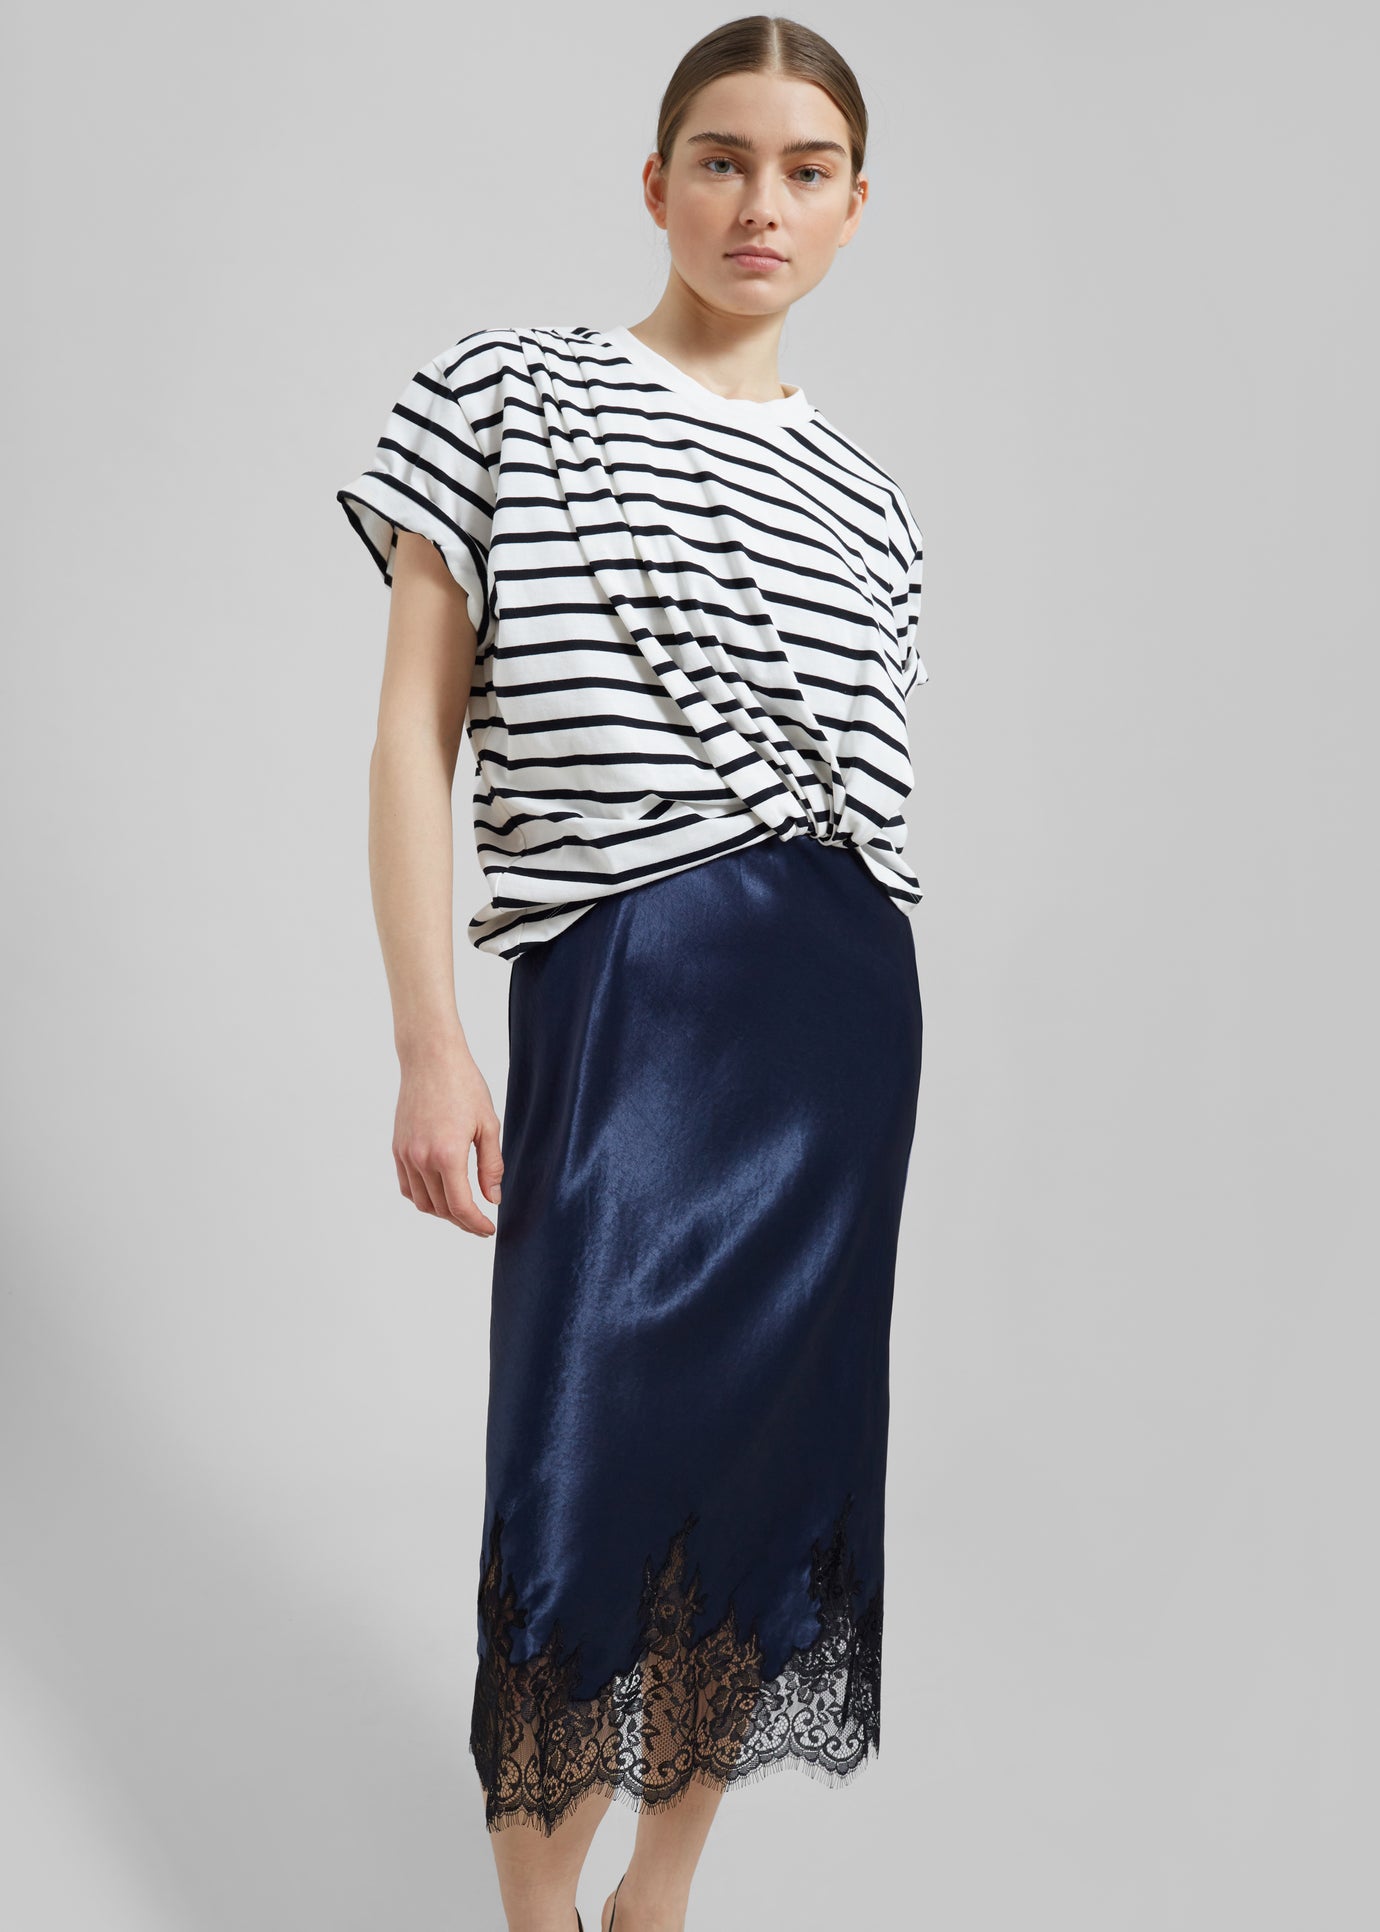 3.1 Phillip Lim Striped Draped T-Shirt Slip Combo Dress - White Multi Stripe - 1